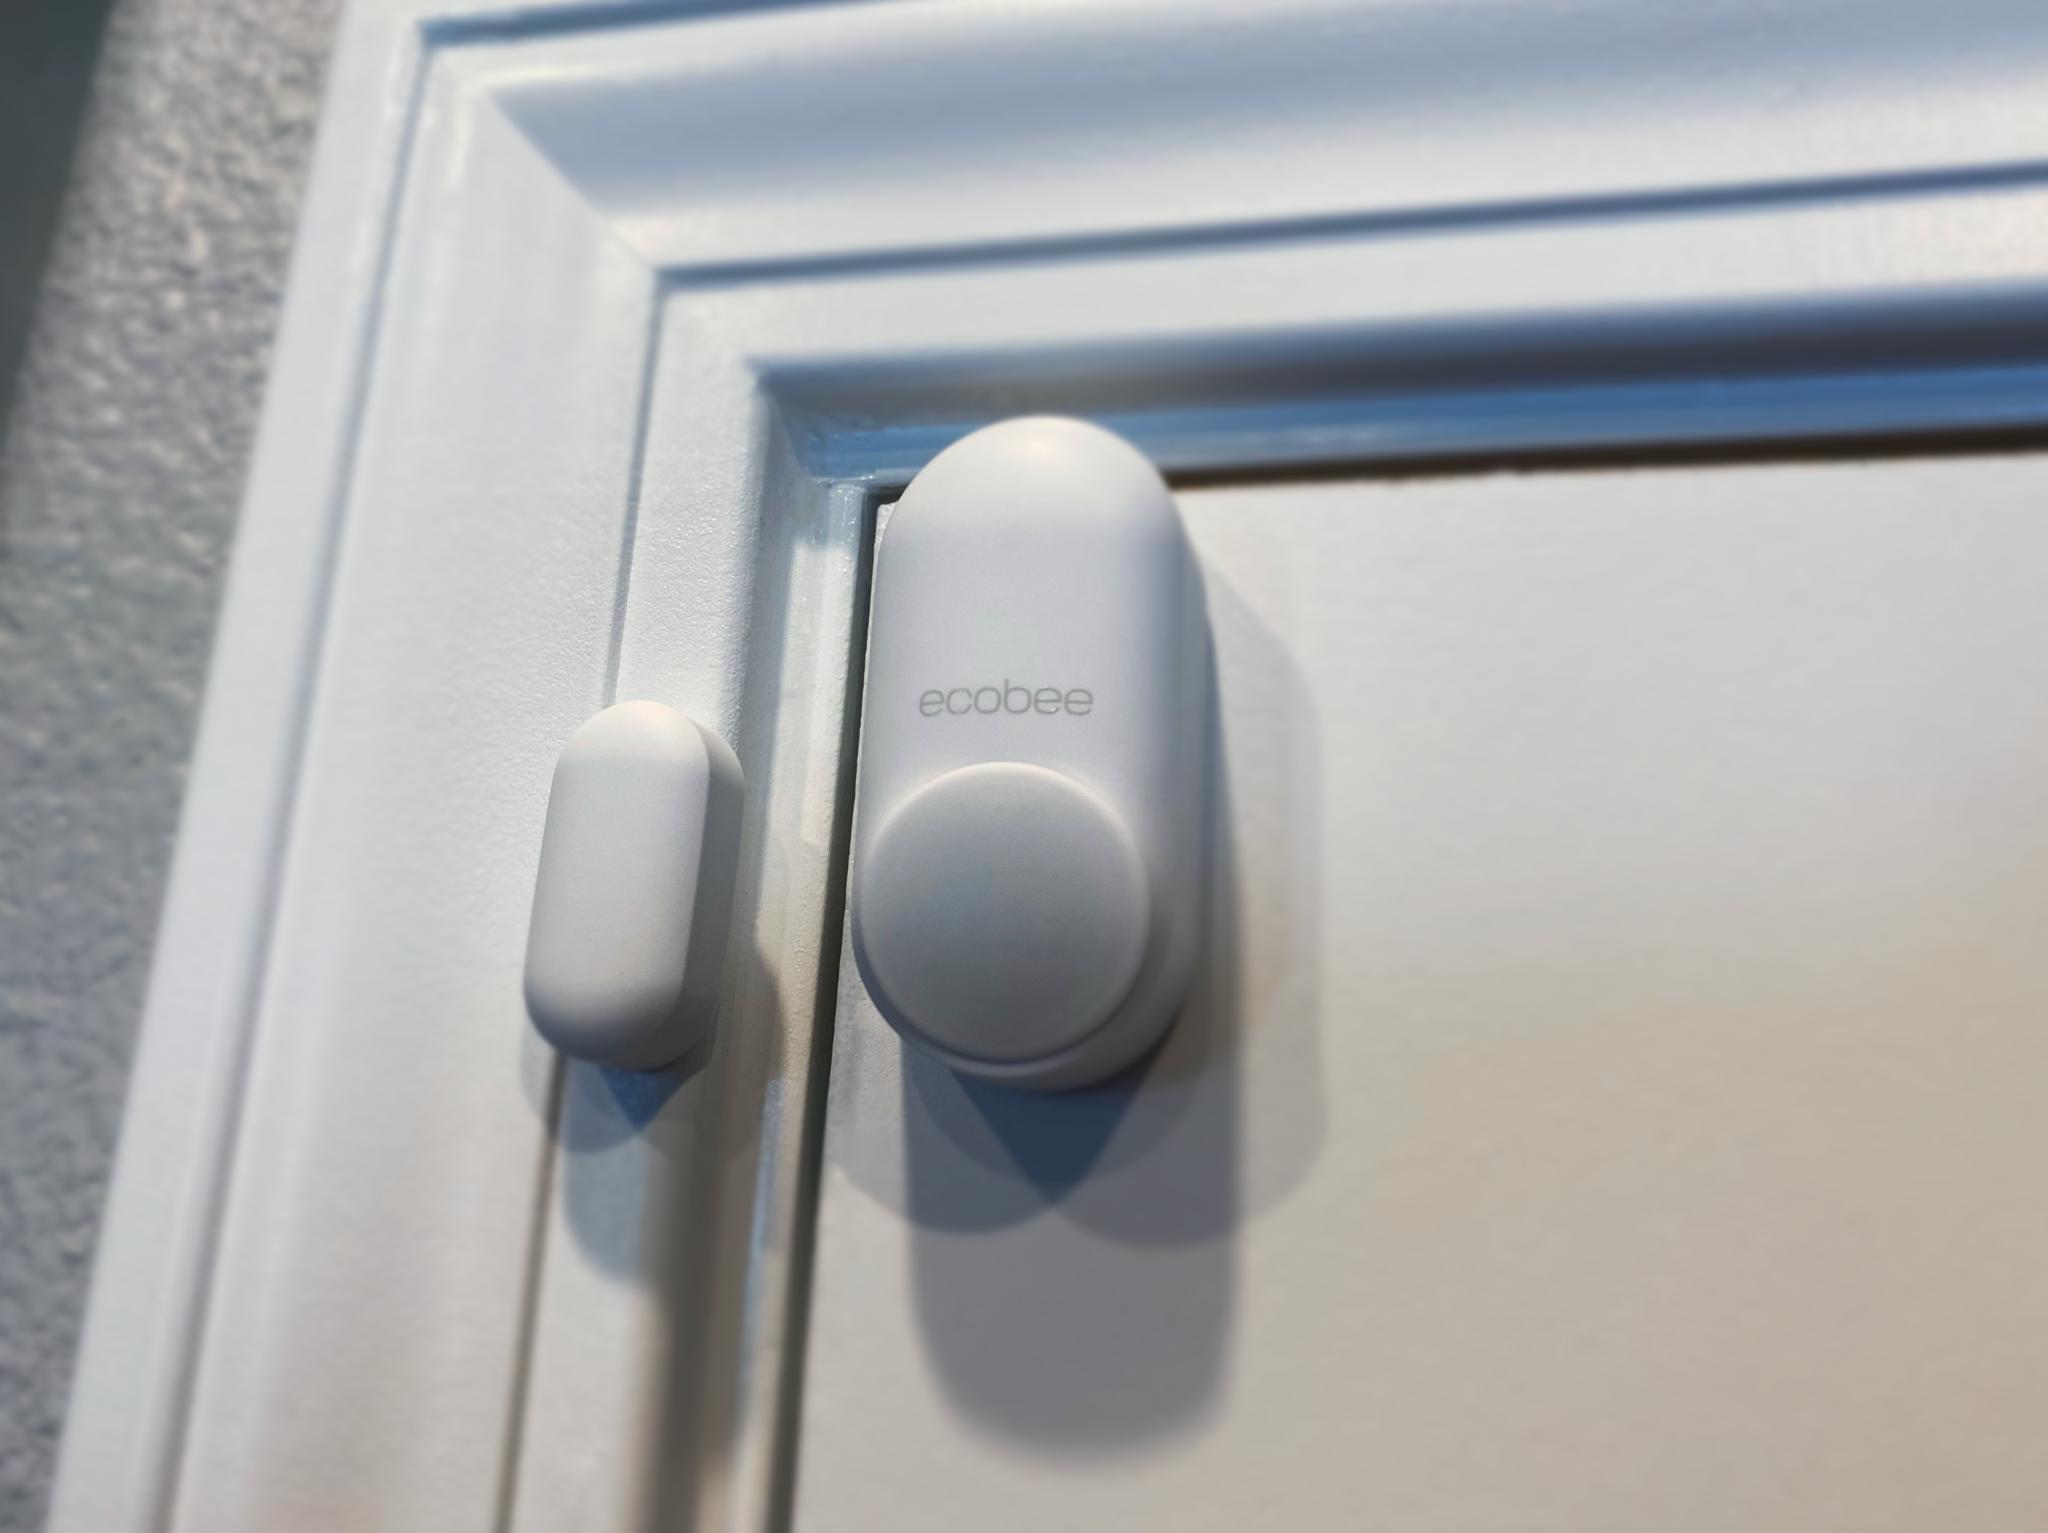 ecobee SmartSensor installed on an interior door